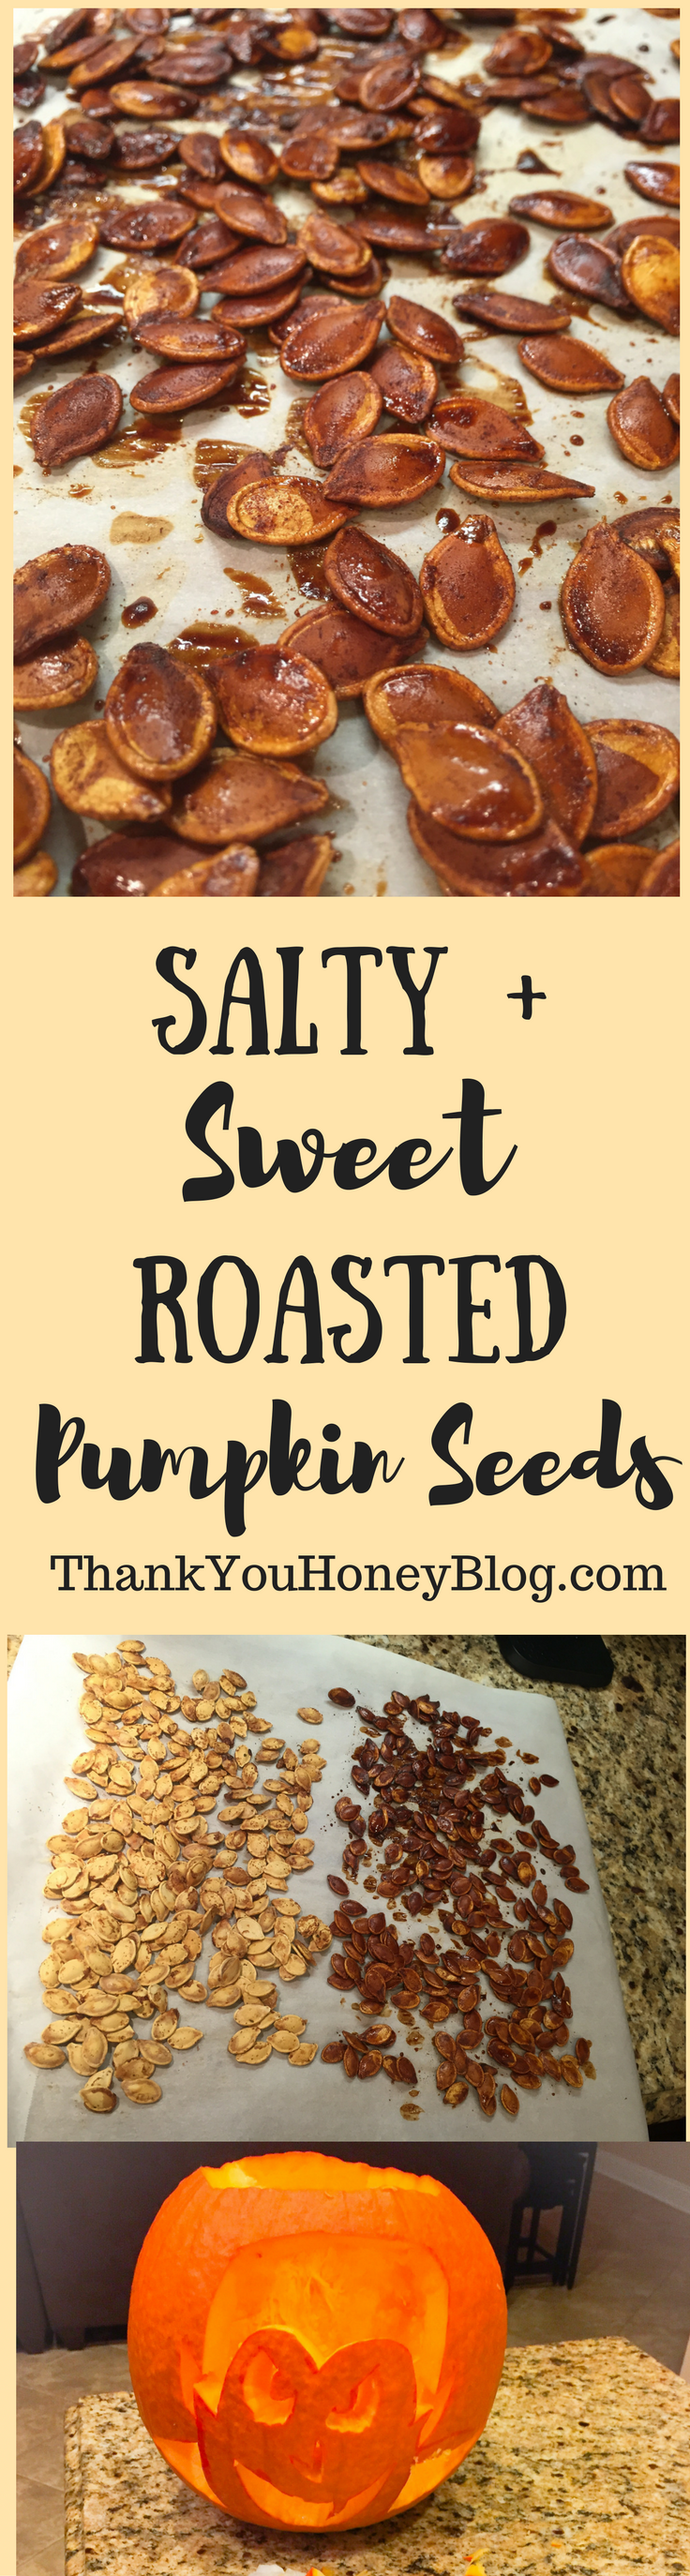 Salty + Sweet Roasted Pumpkin Seeds